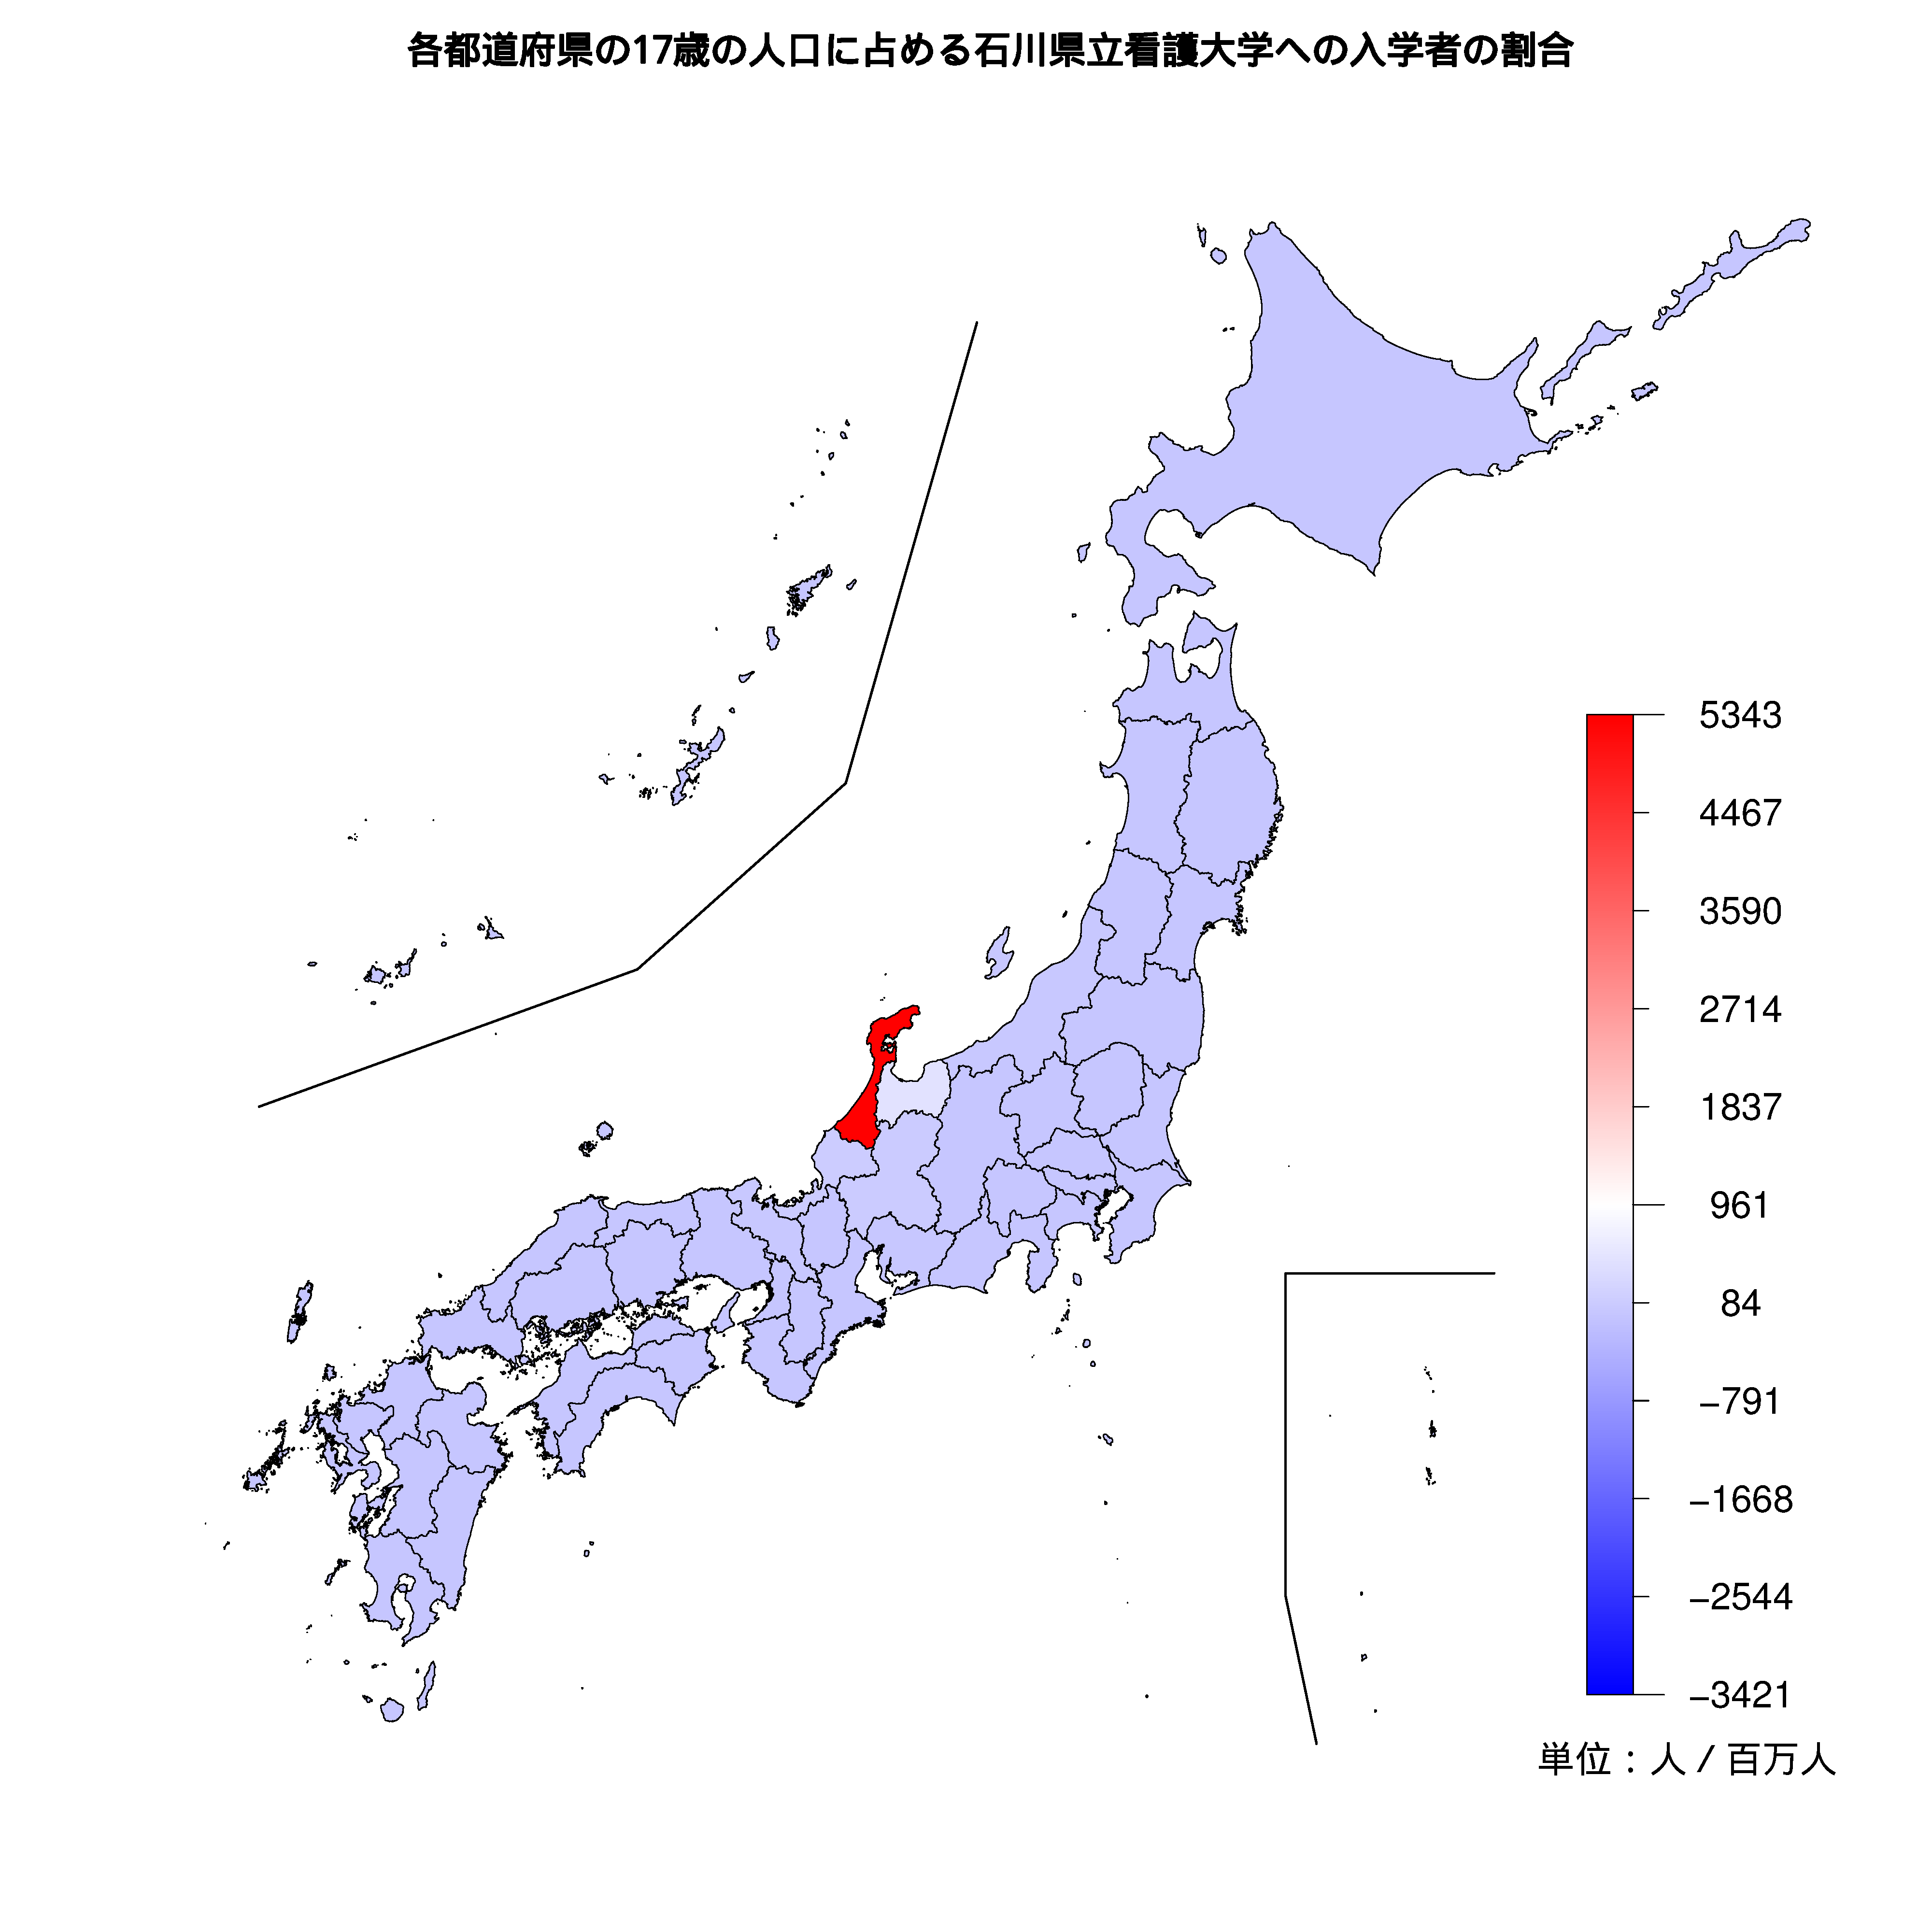 石川県立看護大学への入学者が多い都道府県の色分け地図